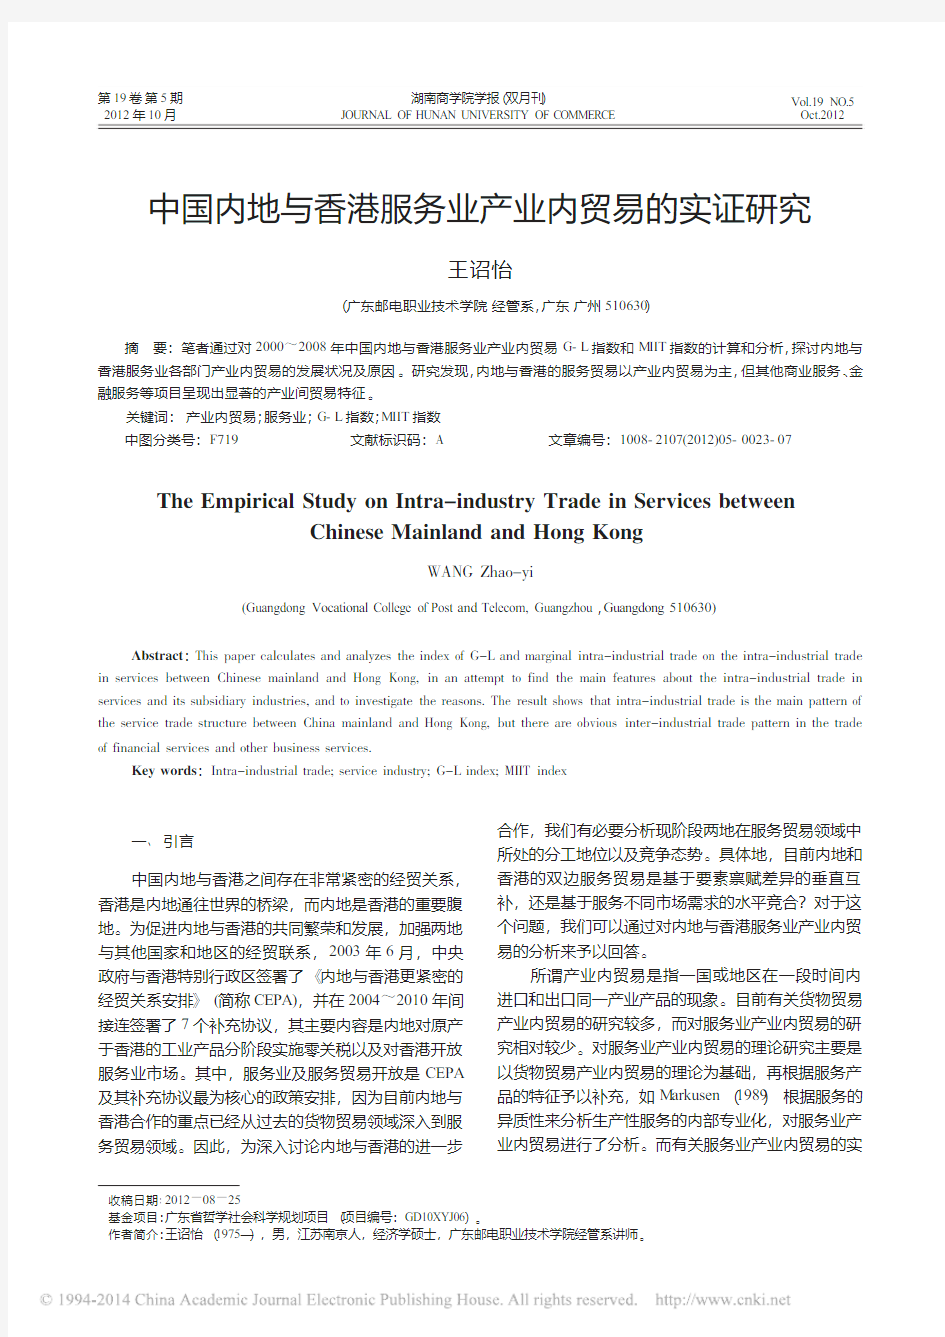 中国内地与香港服务业产业内贸易的实证研究